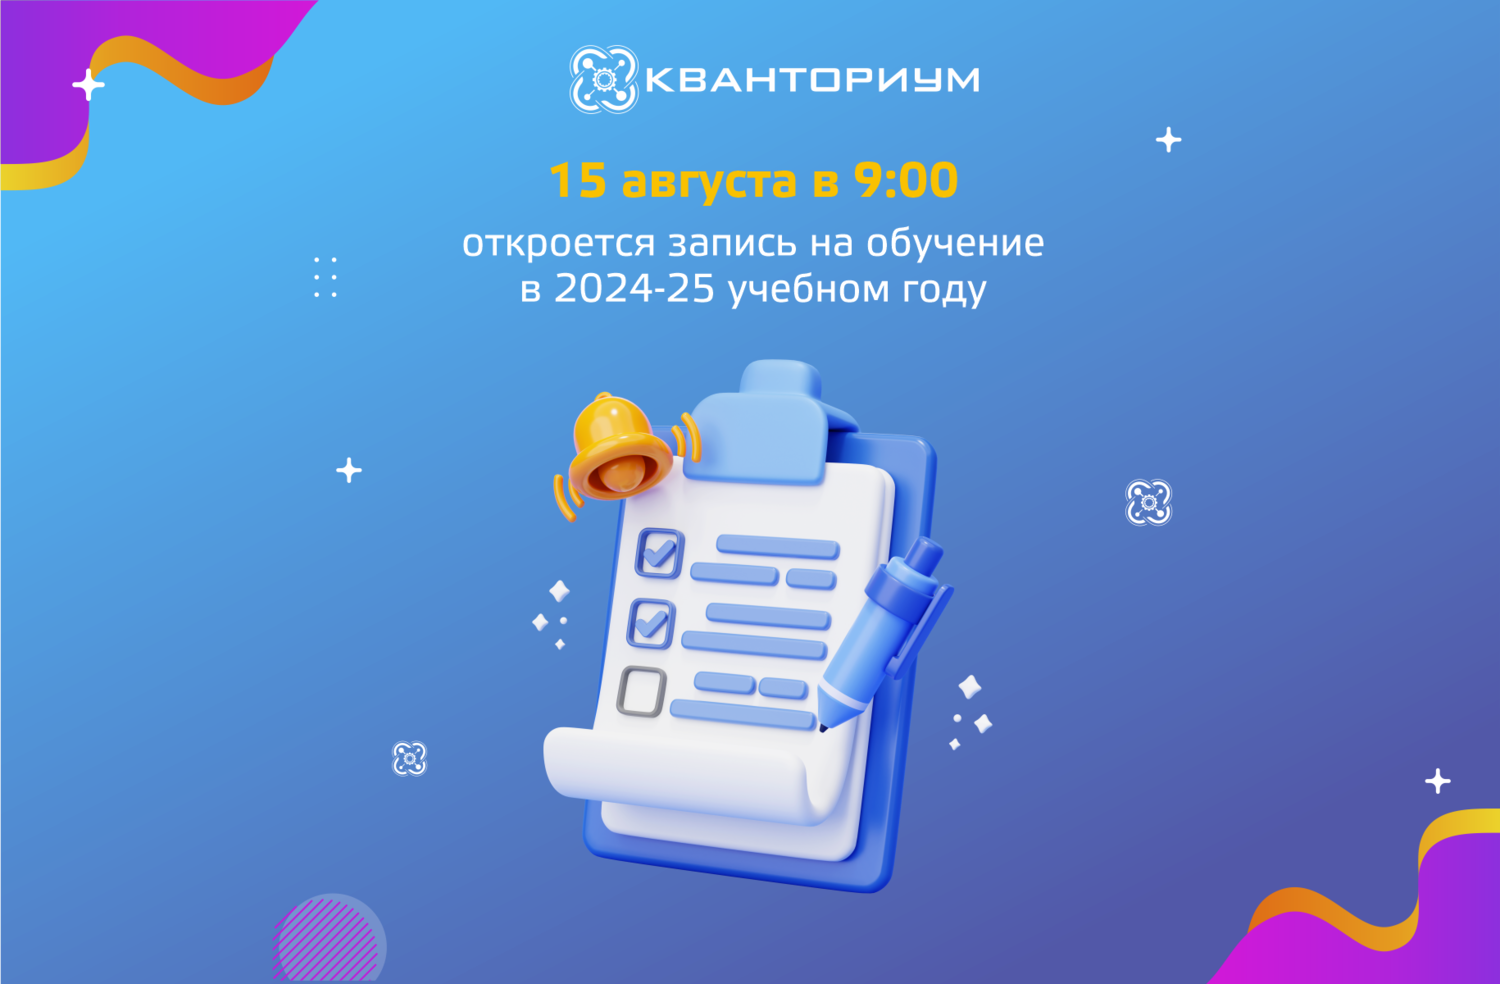 Запись на обучение в технопарке «Кванториум» в г. Кирове в 2024-25 учебном году откроется 15 августа в 9:00